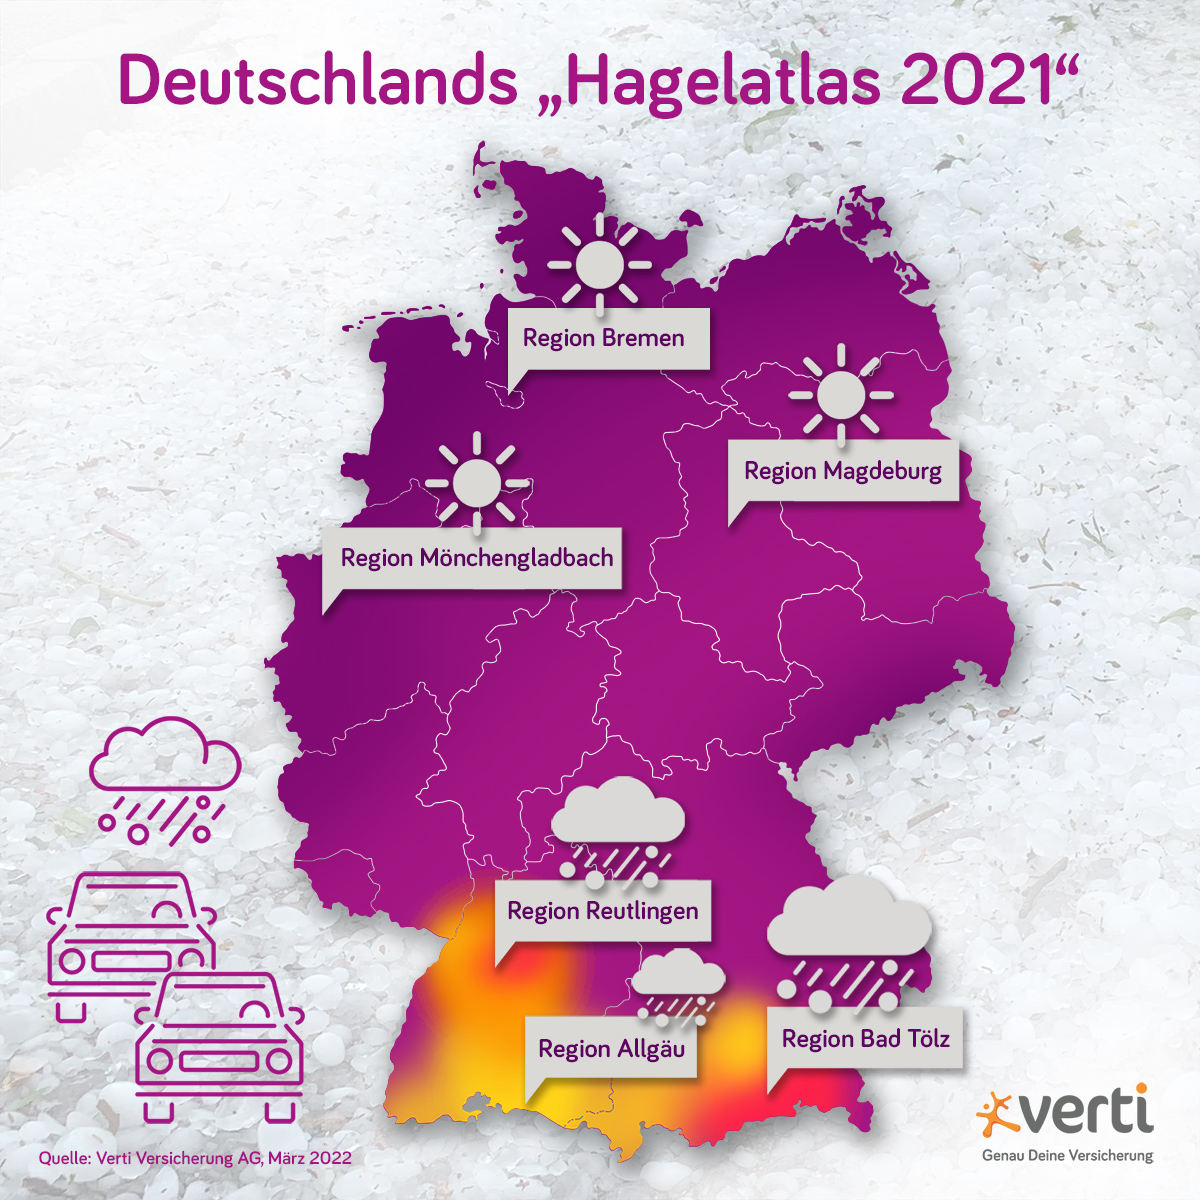 Hagel-Atlas von Deutschland 2021 (Quelle: Verti Versicherung)